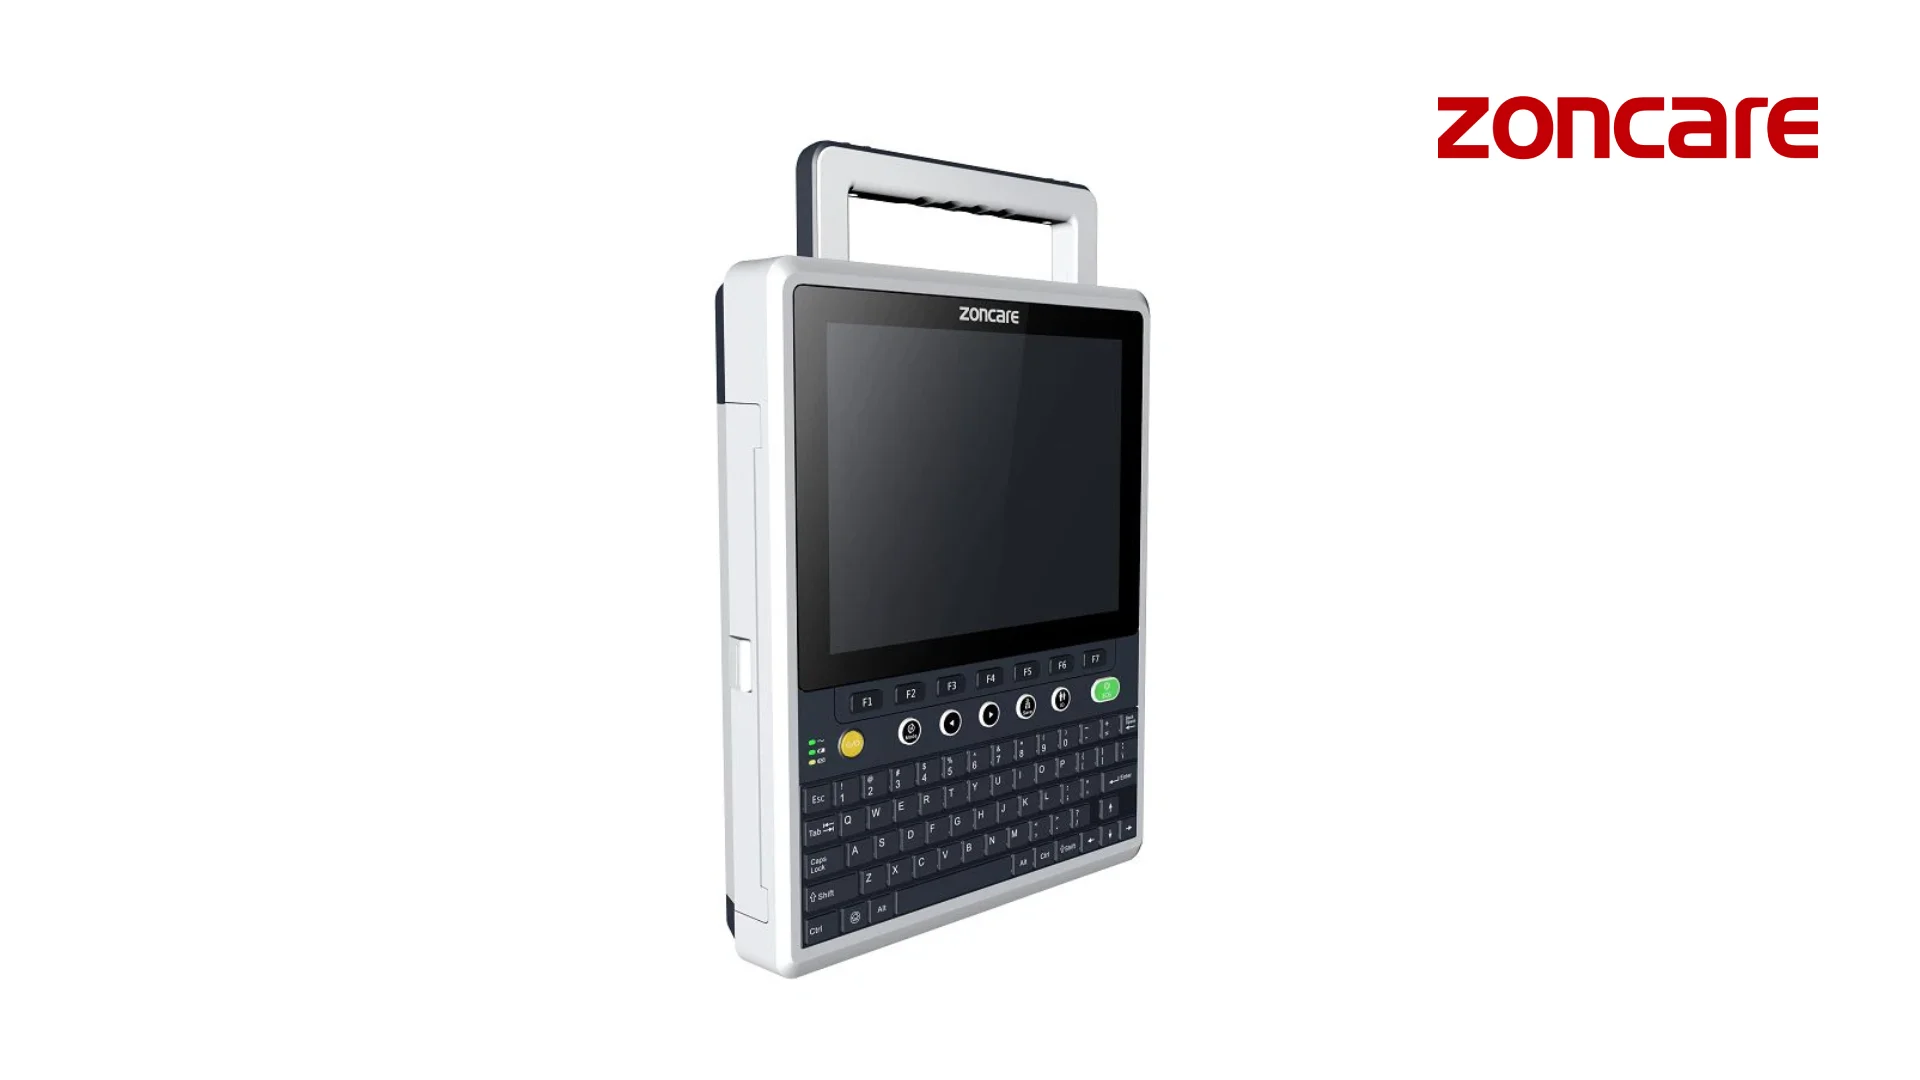 جهاز ZONCARE iMAC120 PRO ذو 12 قناة لتخطيط القلب